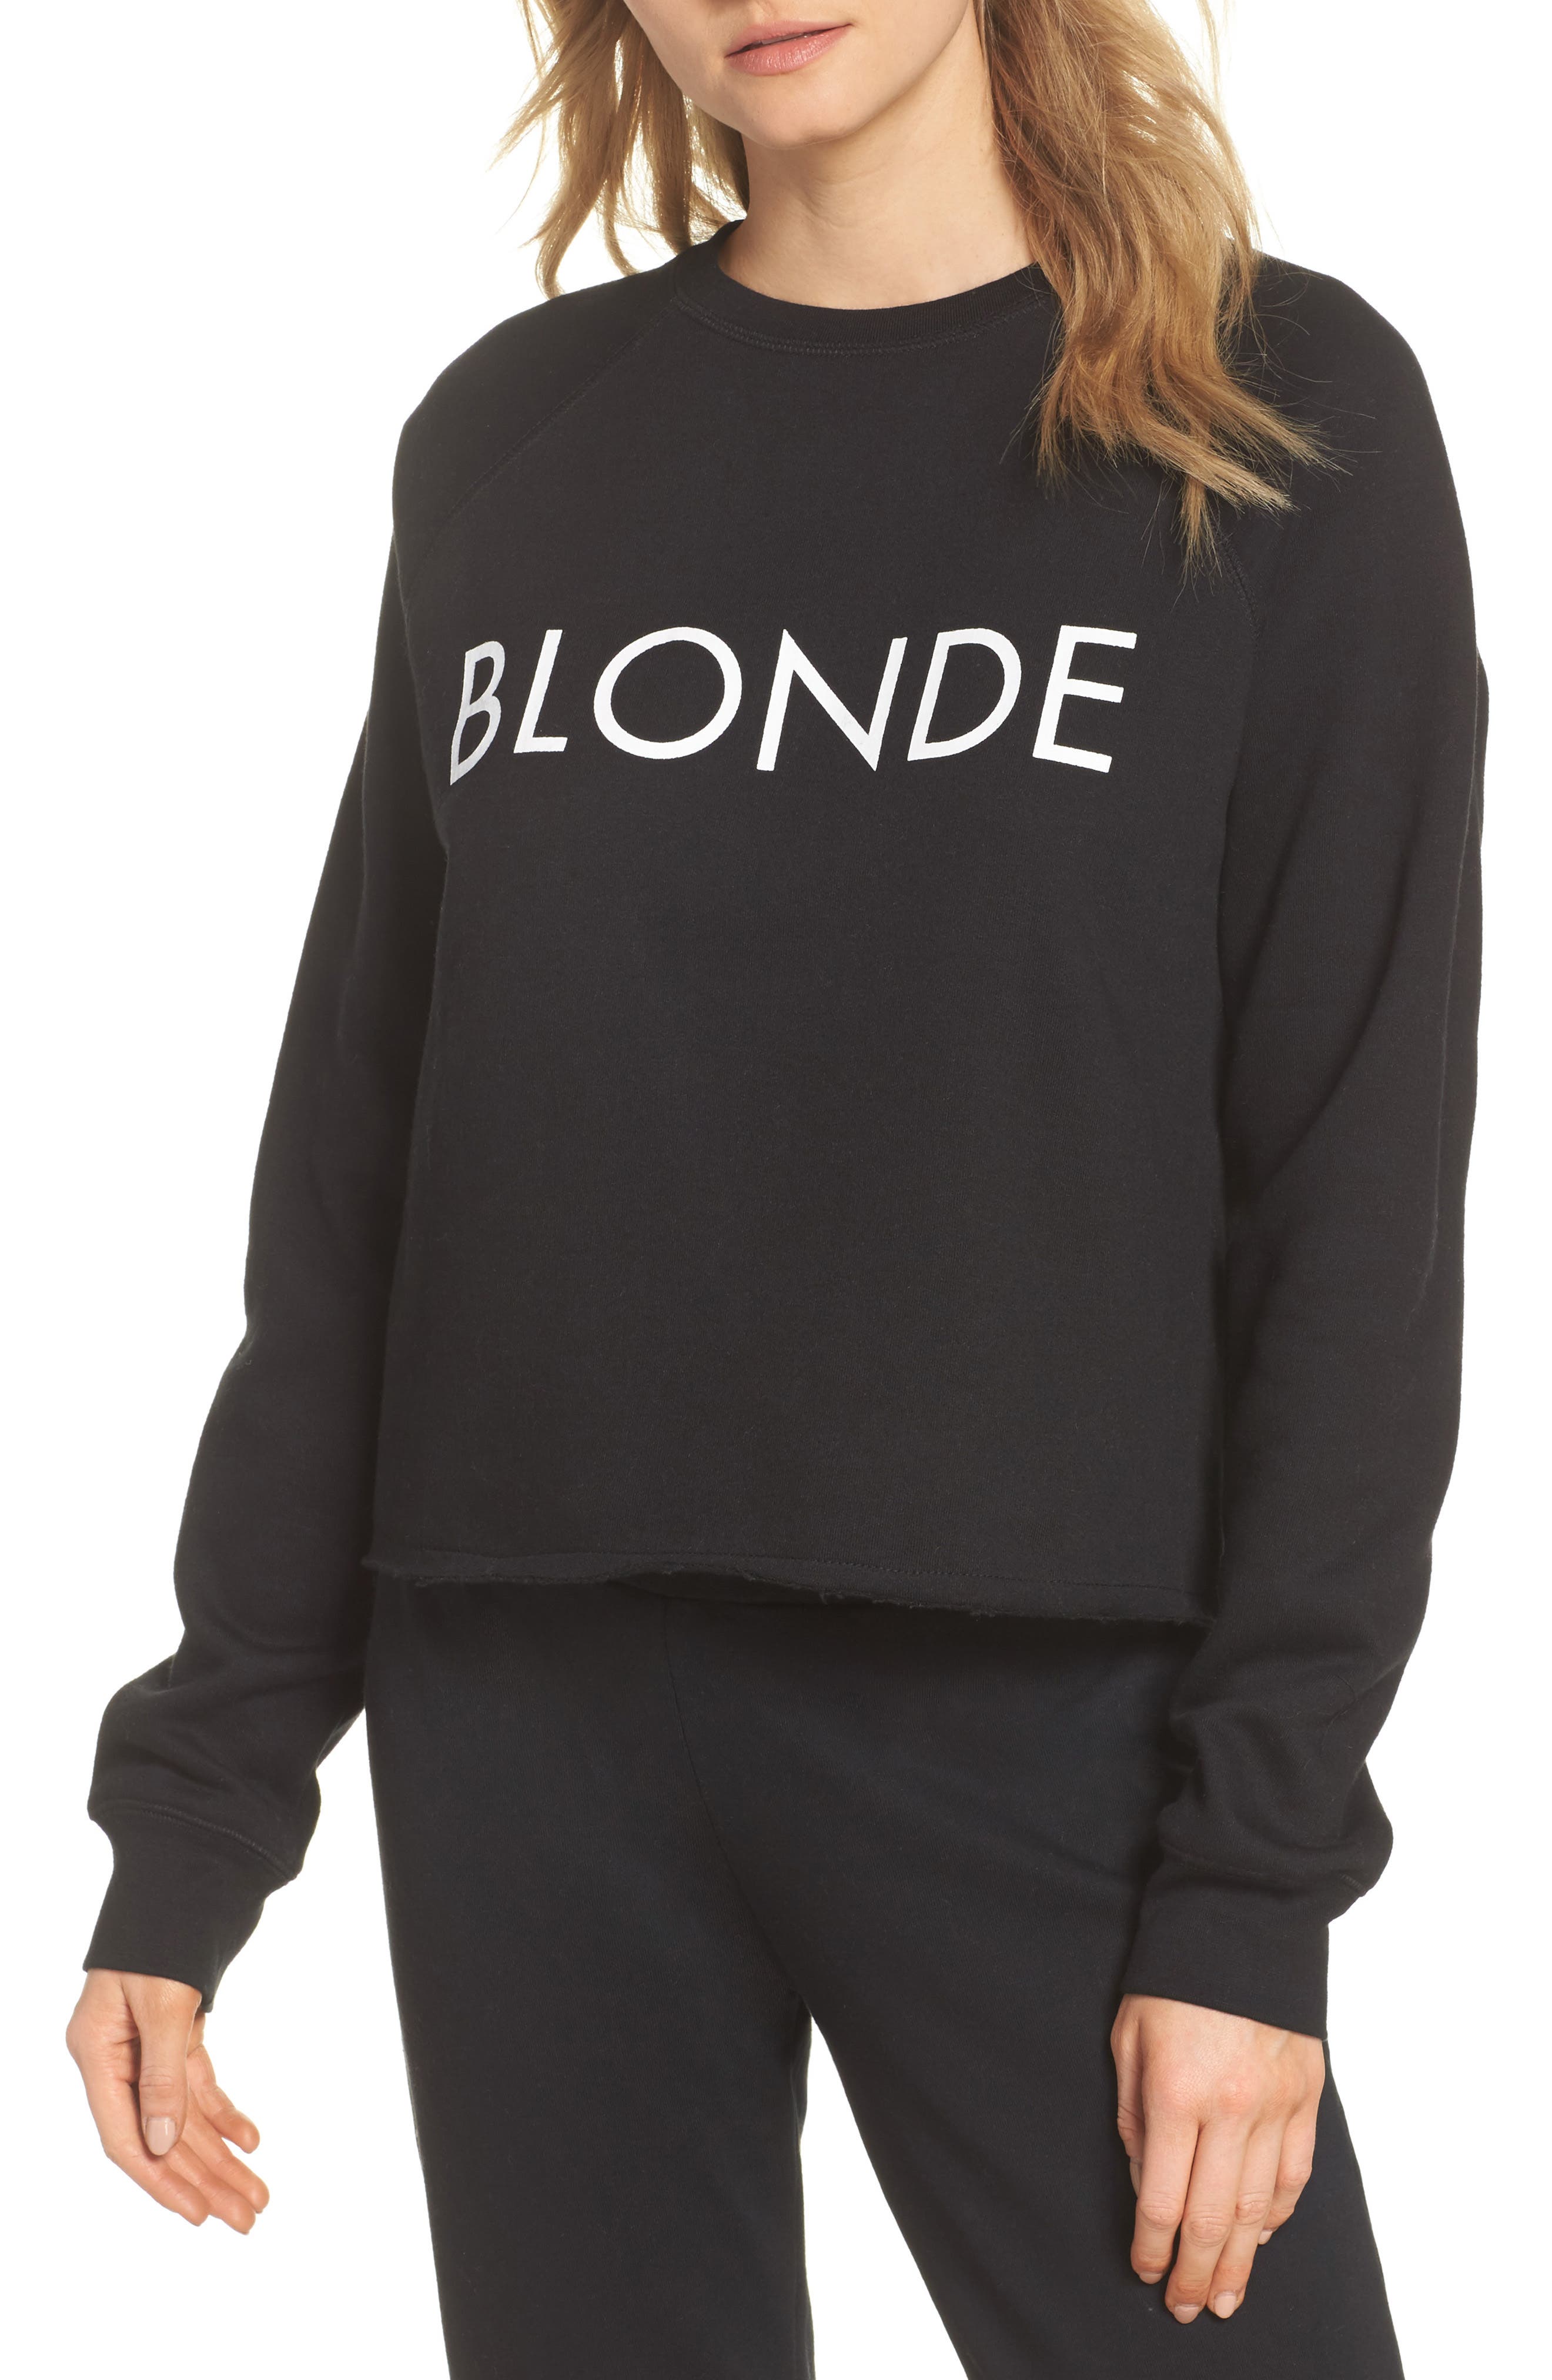 blonde brunette sweatshirts